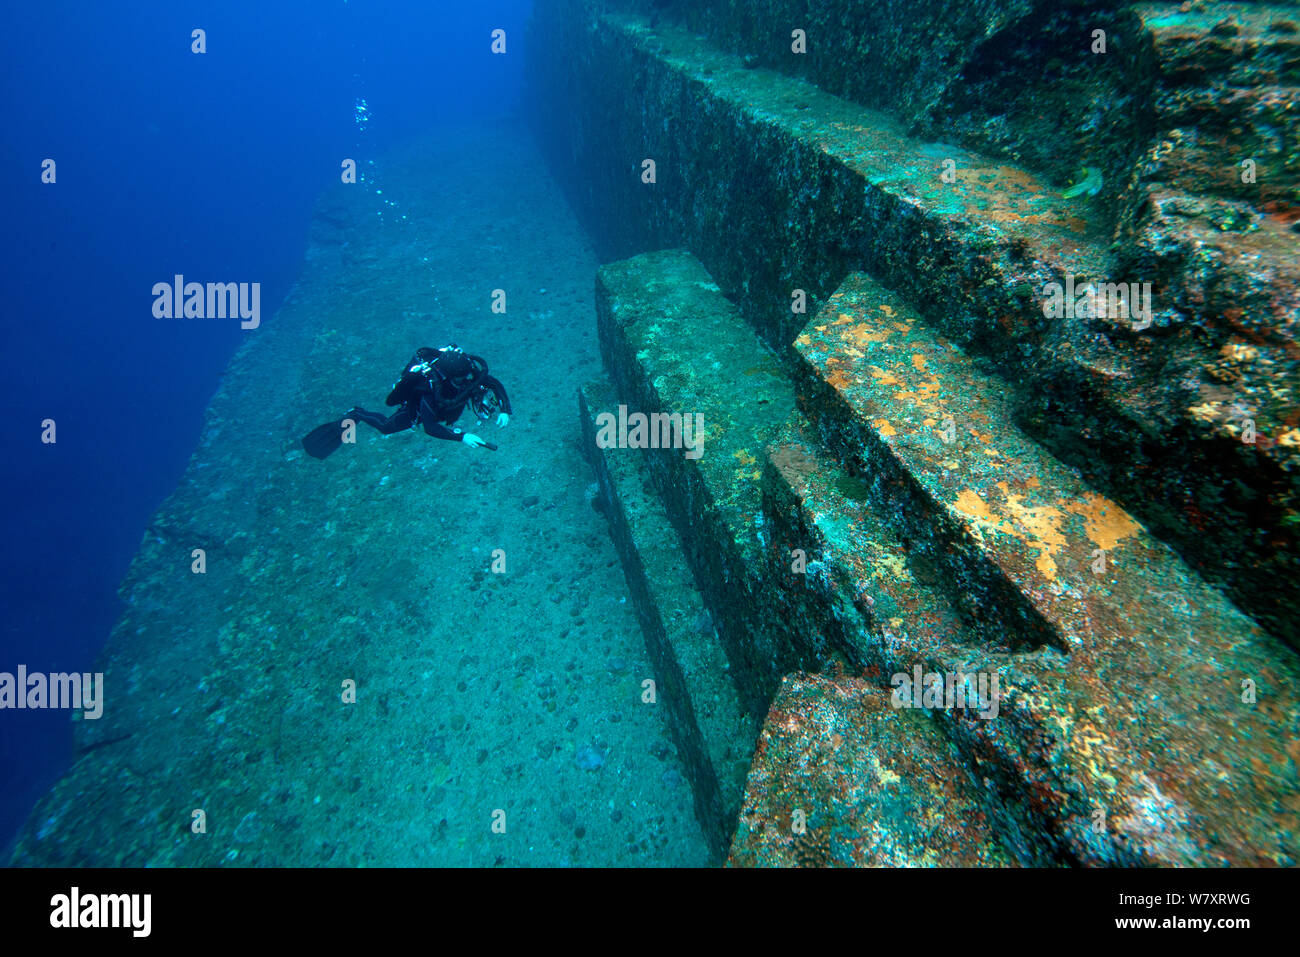 Taucher, die Untersuchung der Sandstein-Struktur des Yonaguni Unterwasser Denkmals, Yonaguni, Ostchinesisches Meer, Japan. Februar 2014. Stockfoto